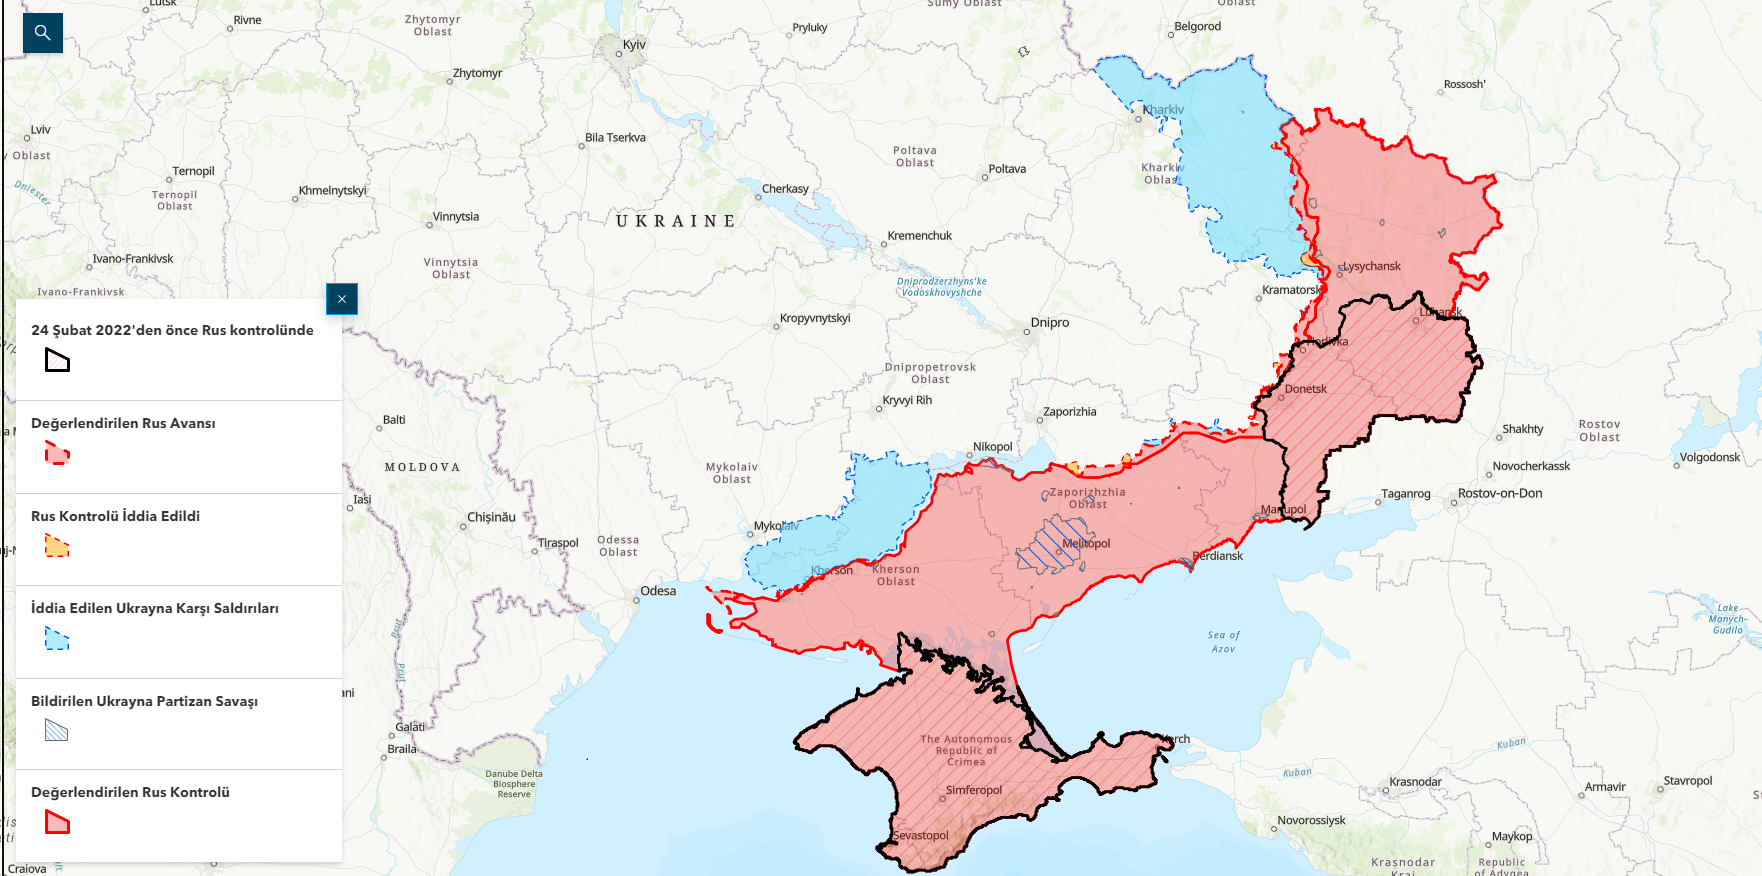 Rusya-Ukrayna Savaşı Haritası - 7 Aralık